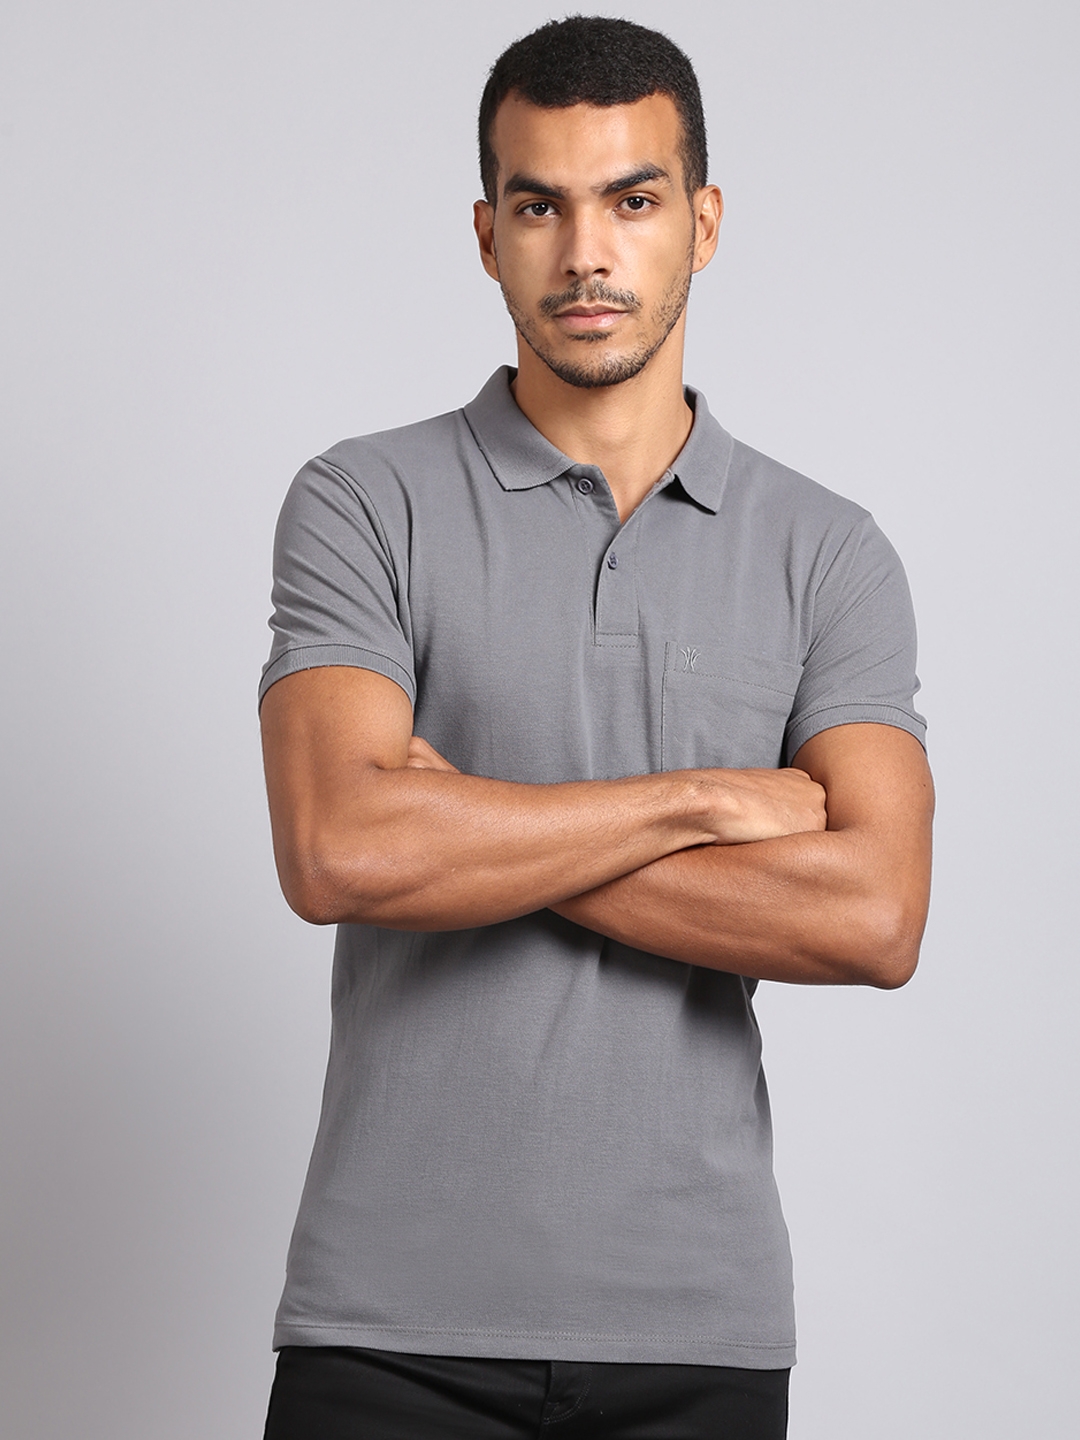 VENITIAN | Venitian Men Solid Polo Neck Grey Cotton T-Shirt With Pocket (M)